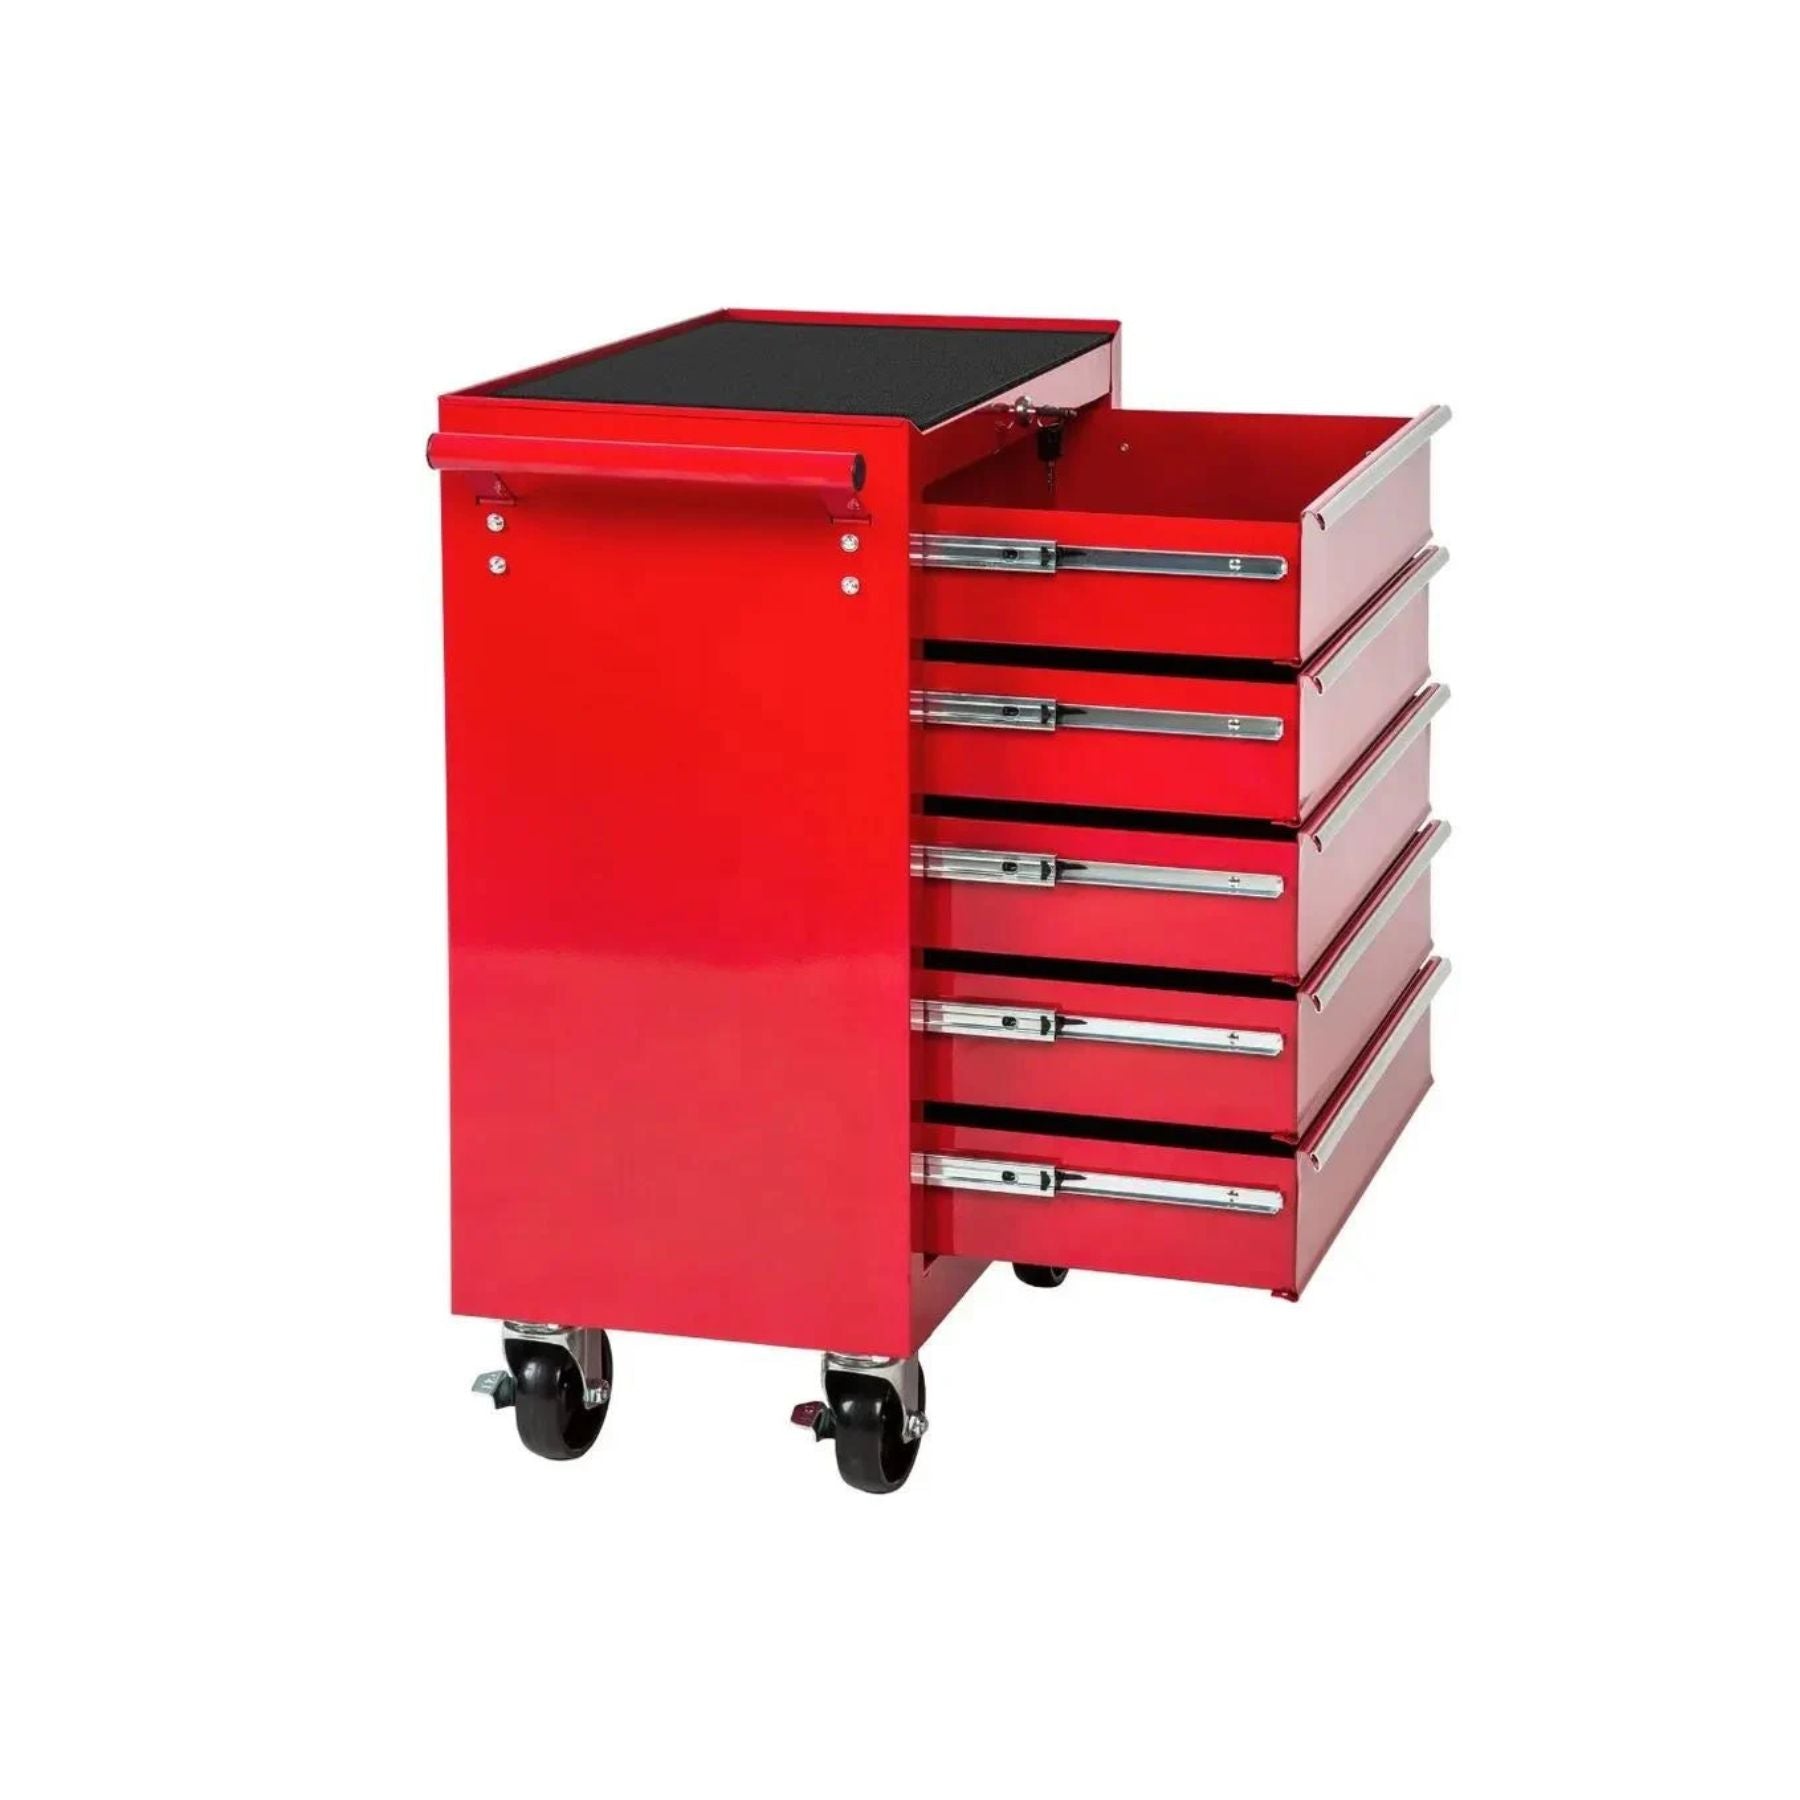 STST74422-8 Roller Cabinet 5 Drawer Red